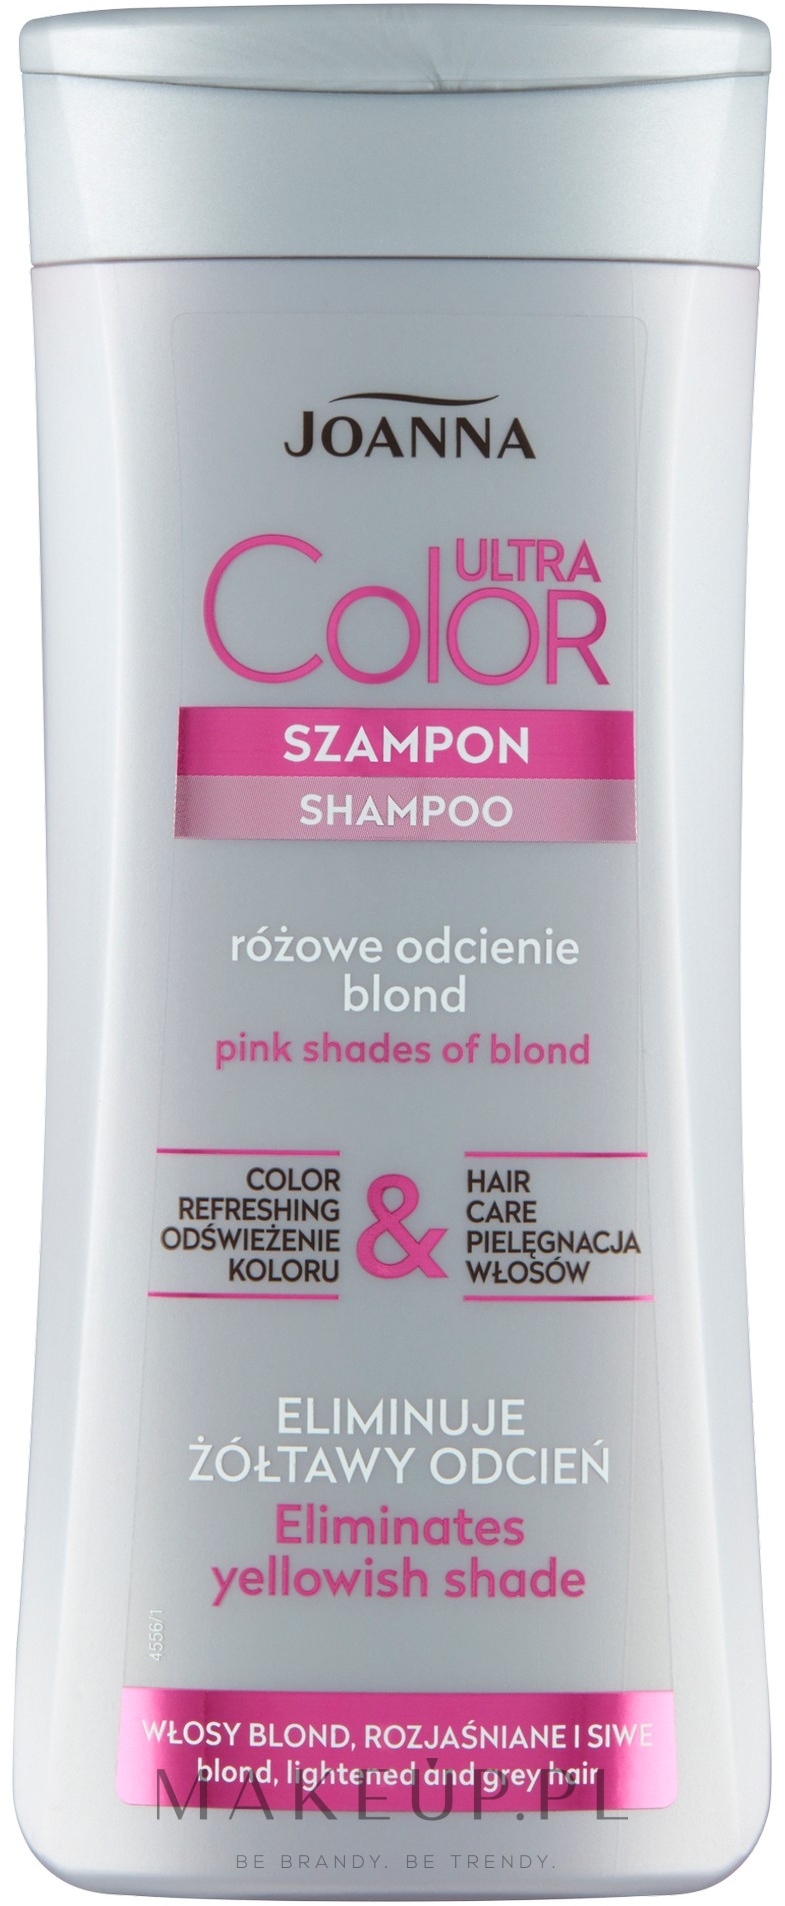 szampon do włosów rozjaśnianych i siwych joanna jak używać